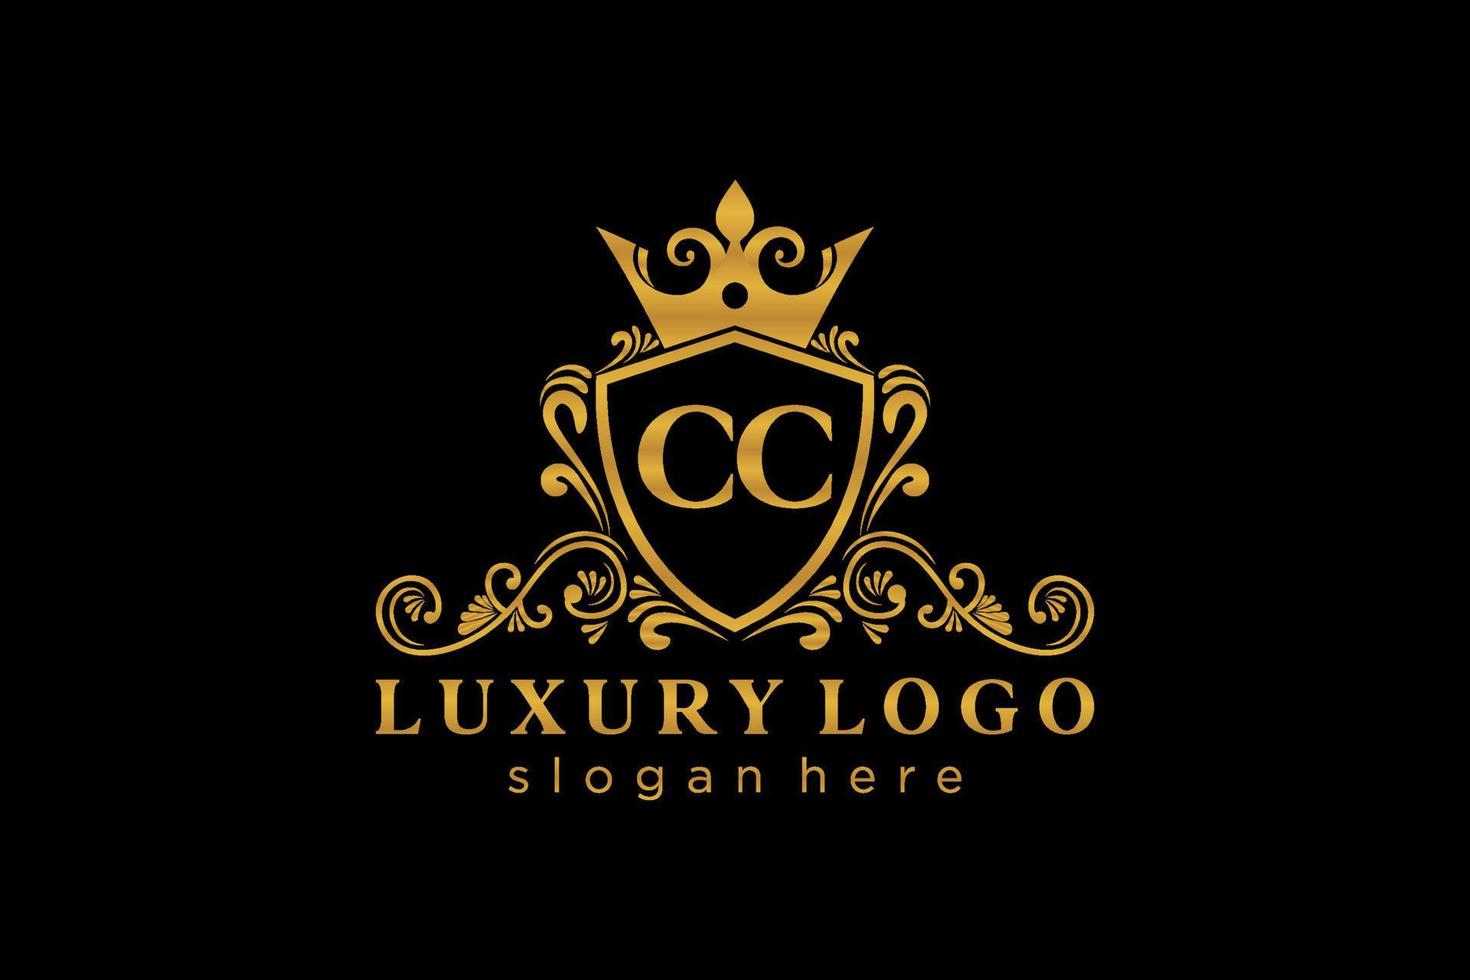 Royal Luxury Logo-Vorlage mit anfänglichem CC-Buchstaben in Vektorgrafiken für Restaurant, Lizenzgebühren, Boutique, Café, Hotel, Heraldik, Schmuck, Mode und andere Vektorillustrationen. vektor